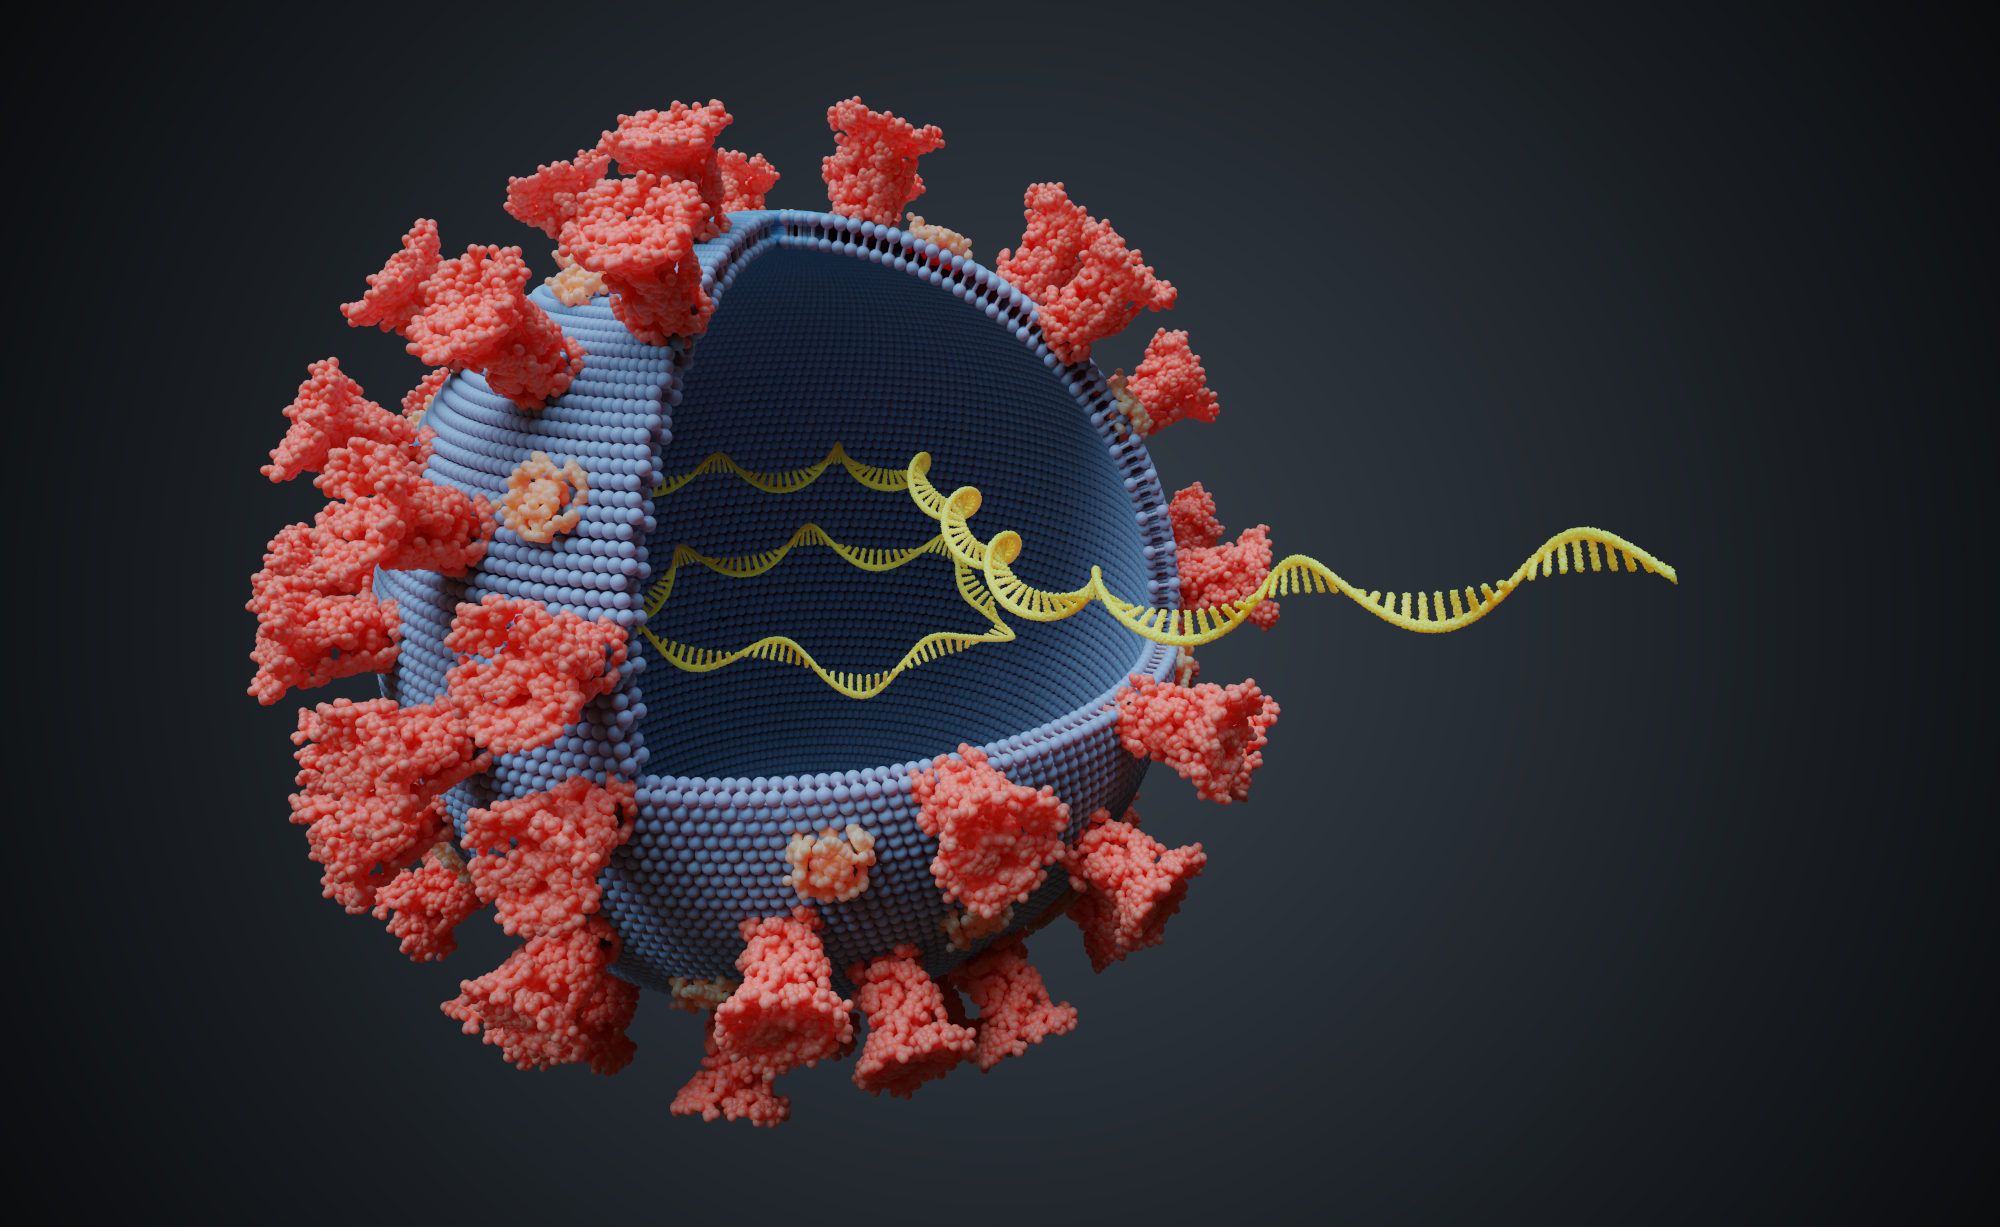 Isolating viral RNA